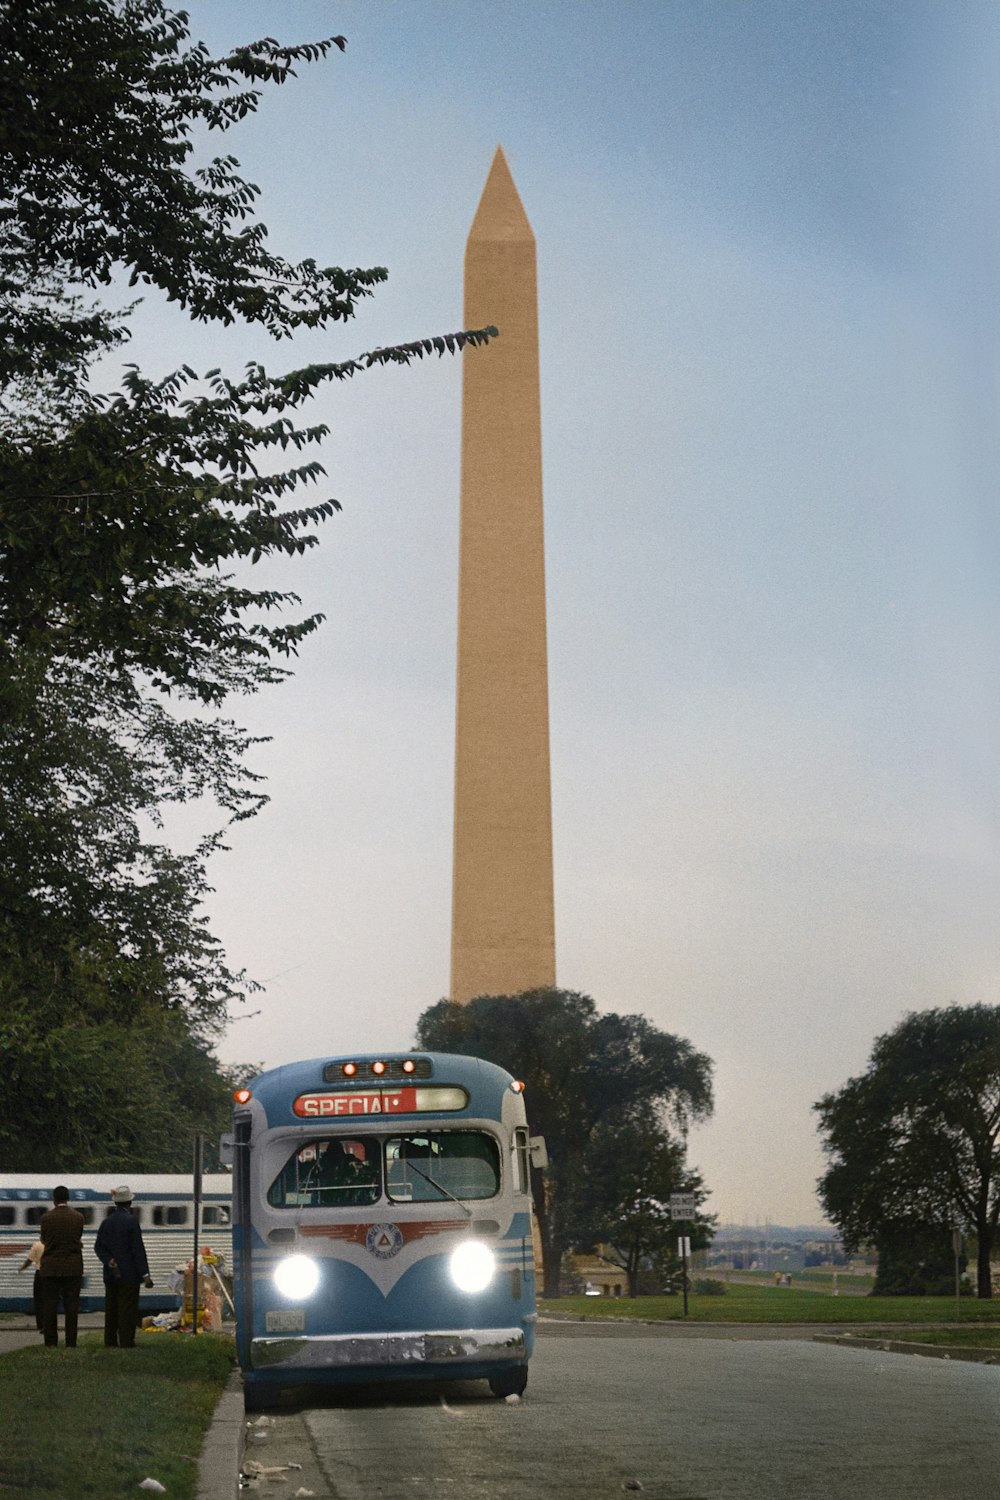 Autobuses saliendo frente al Monumento a Washington después de la Marcha por los Derechos Civiles en Washington, D.C.